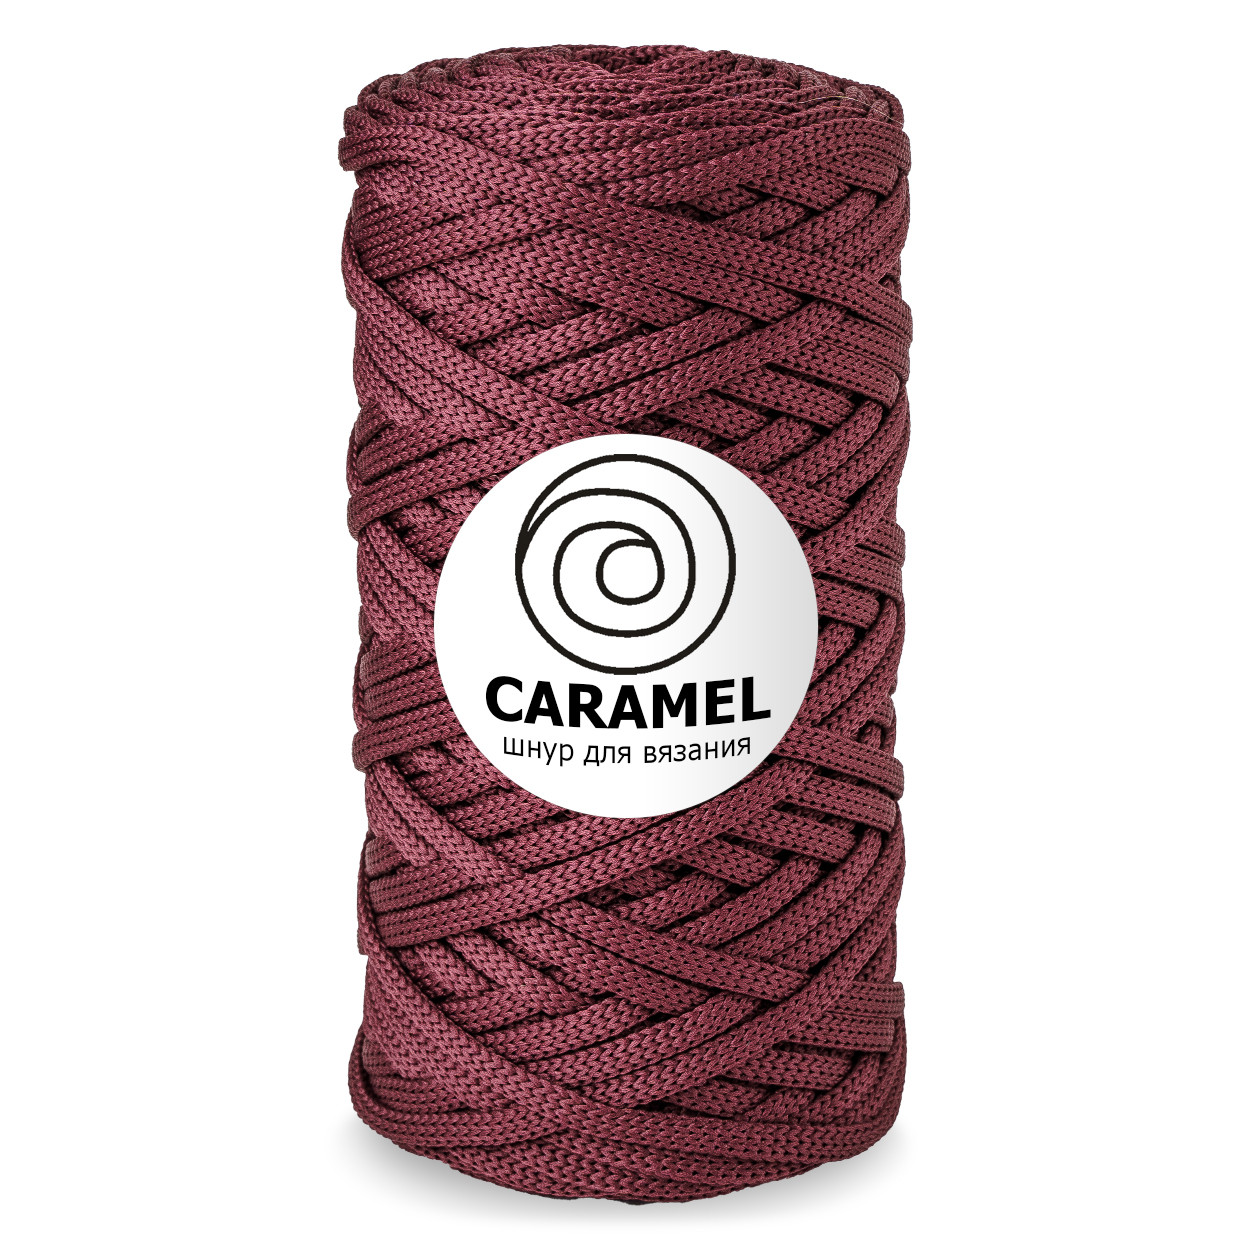 Шнур для вязания полиэфирный Caramel 5 мм, цвет бургунди